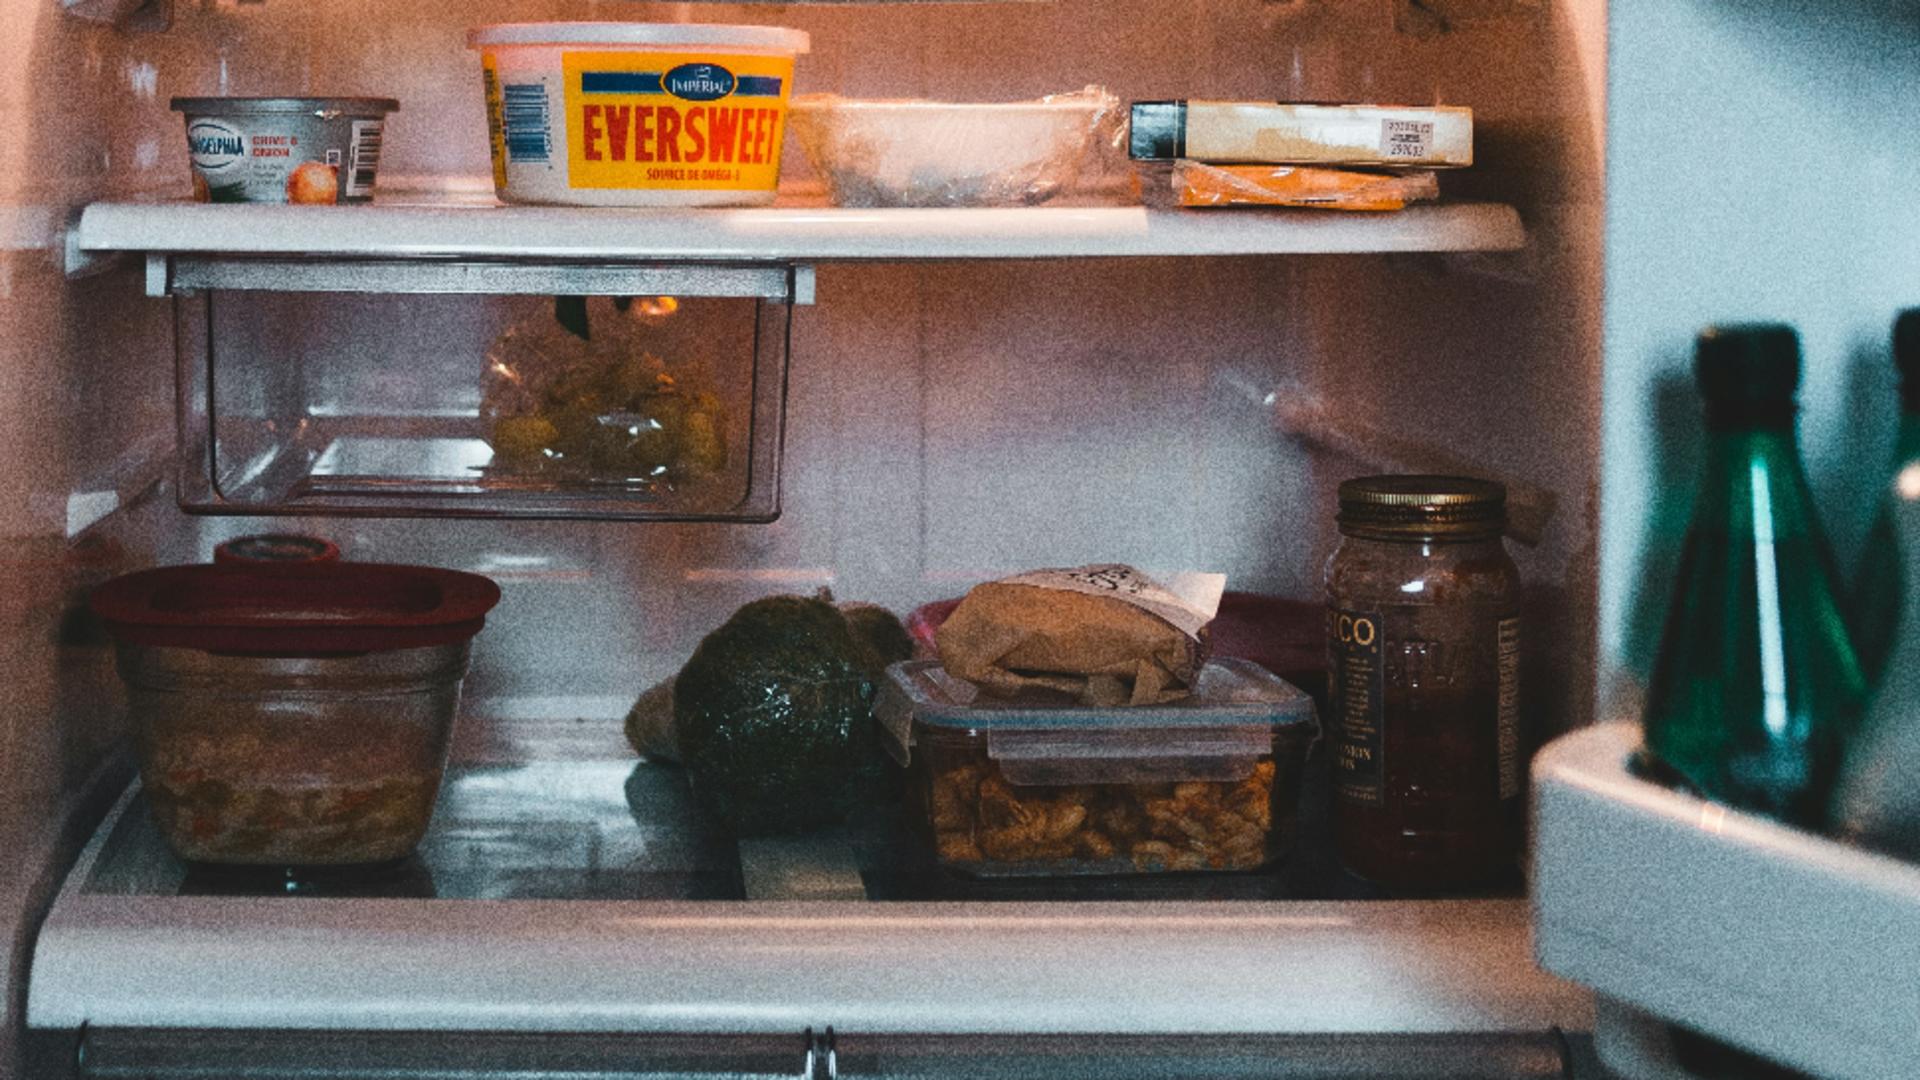 Ce se întâmplă dacă lăsăm ușa frigiderului deschisă. Consecințele pot fi devastatoare: cum poți evita problemele/ unsplash.com